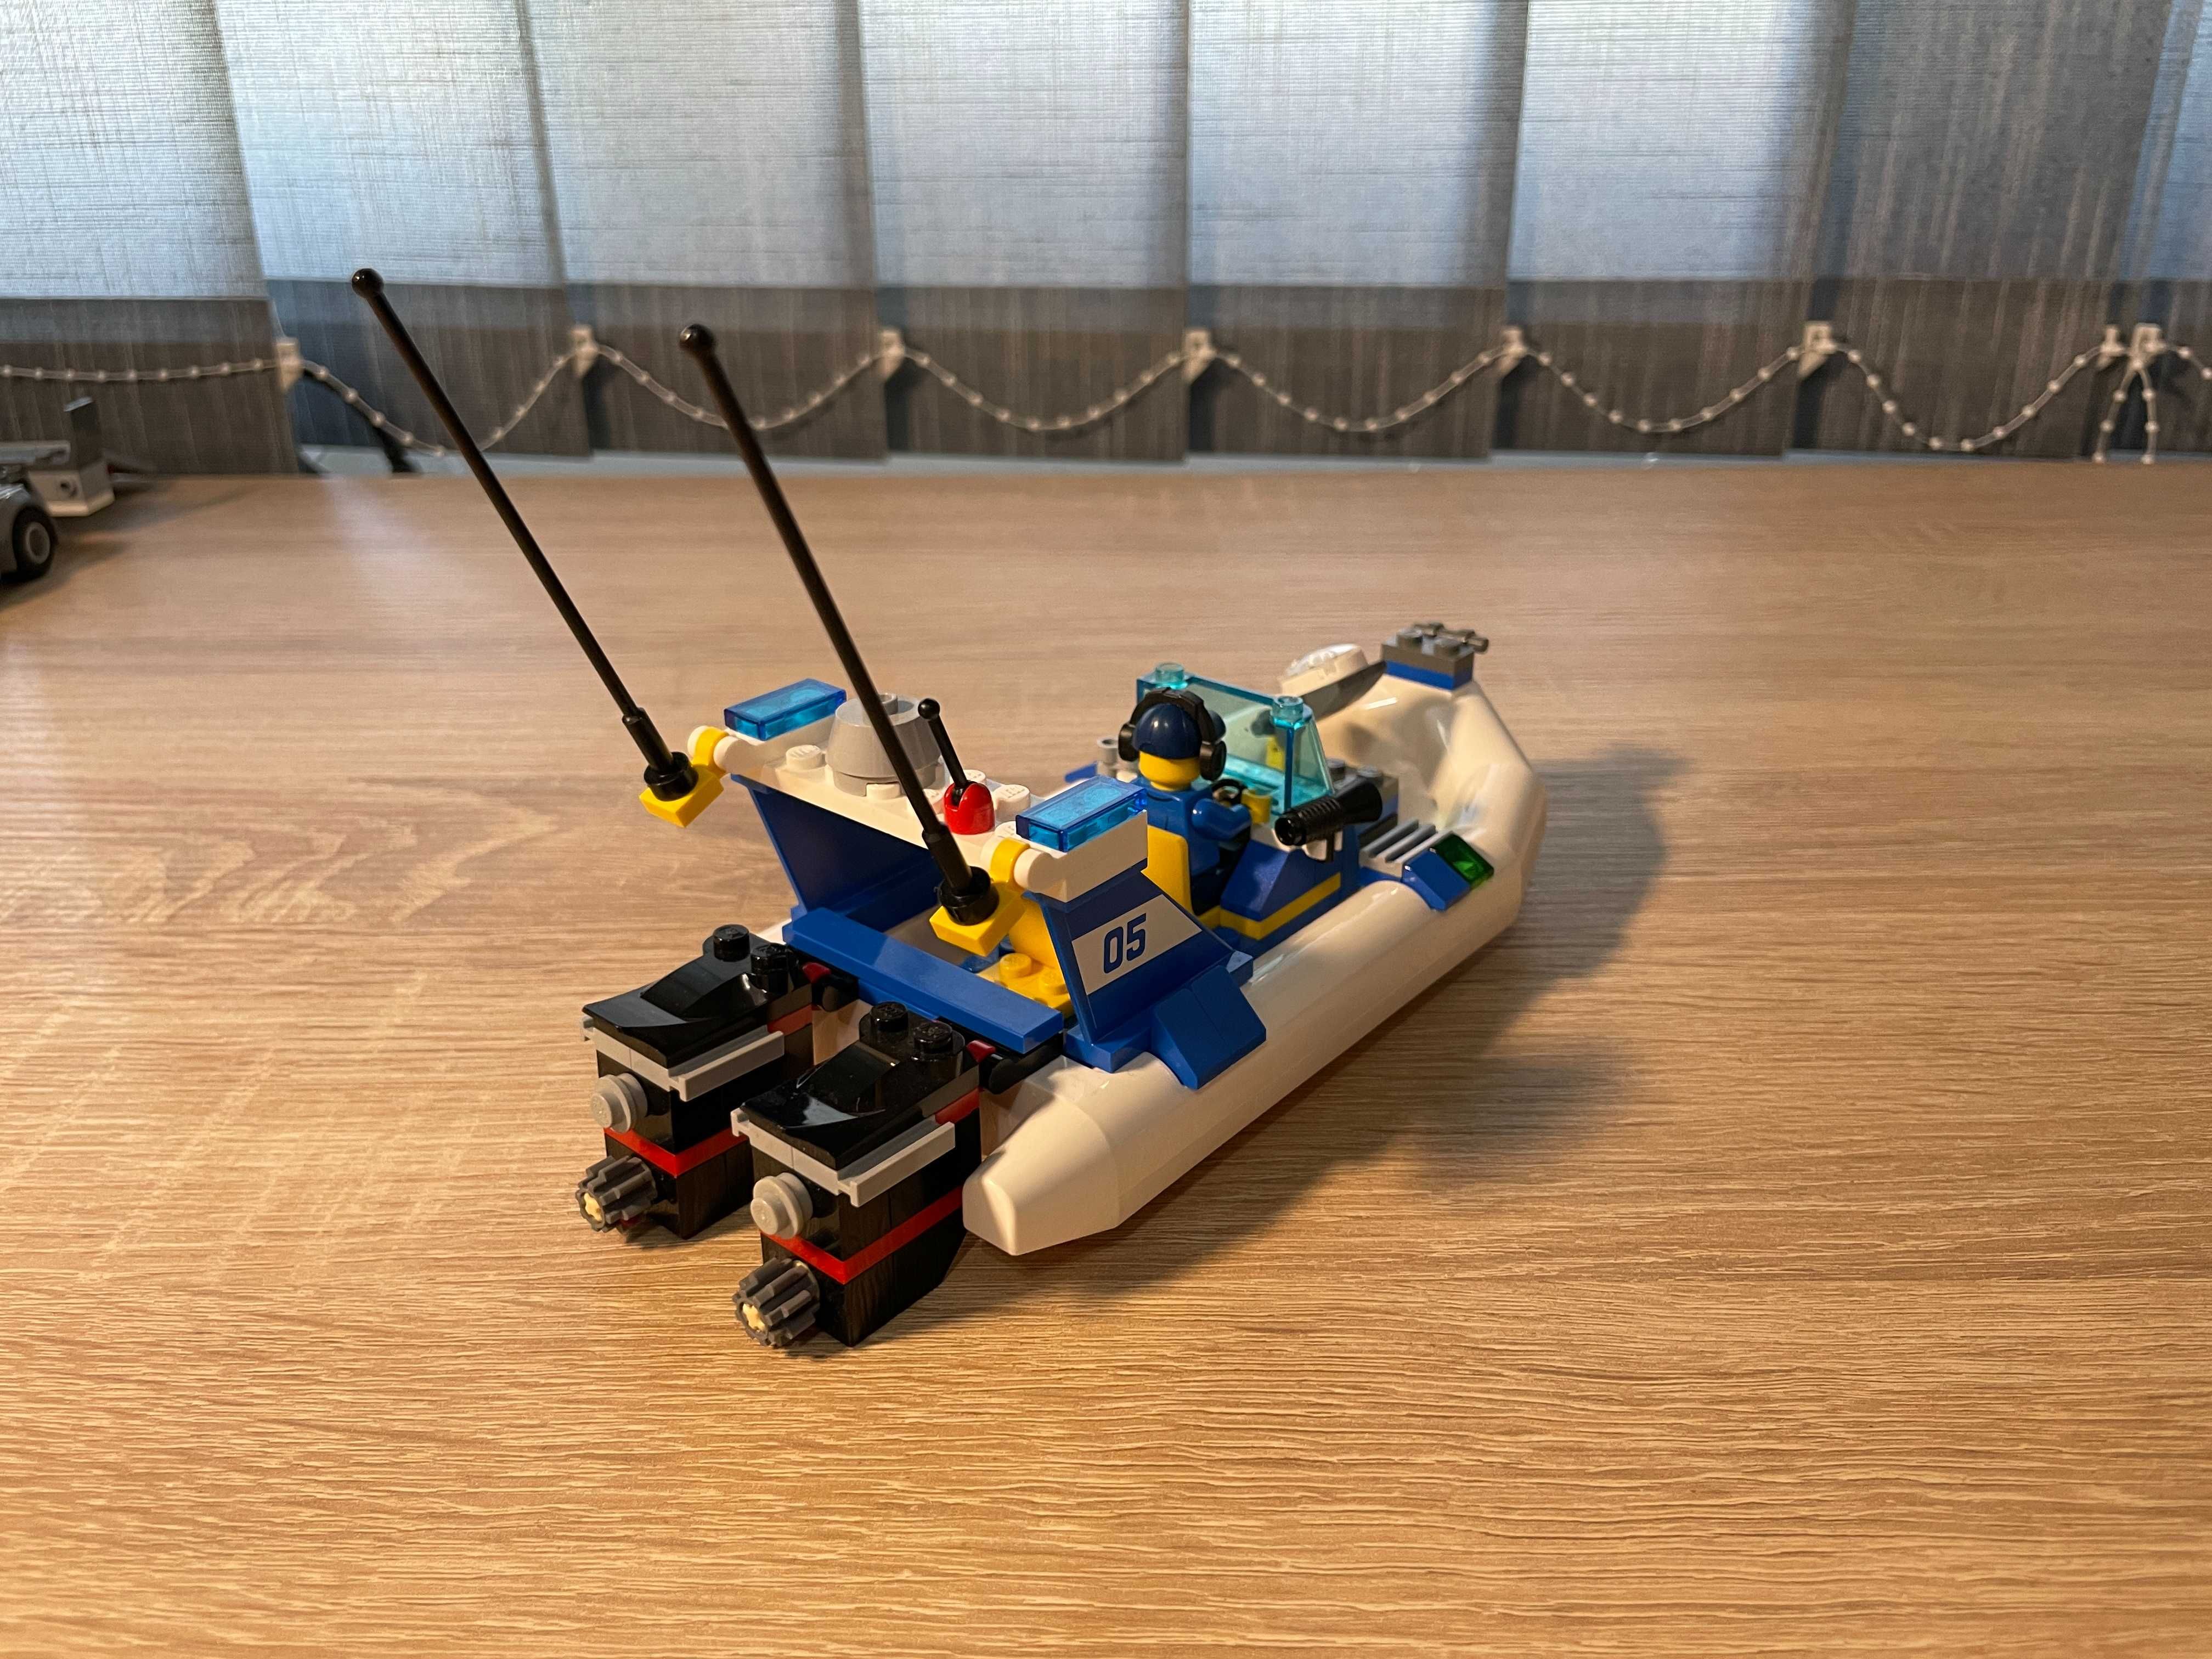 LEGO Police Patrol (60045)